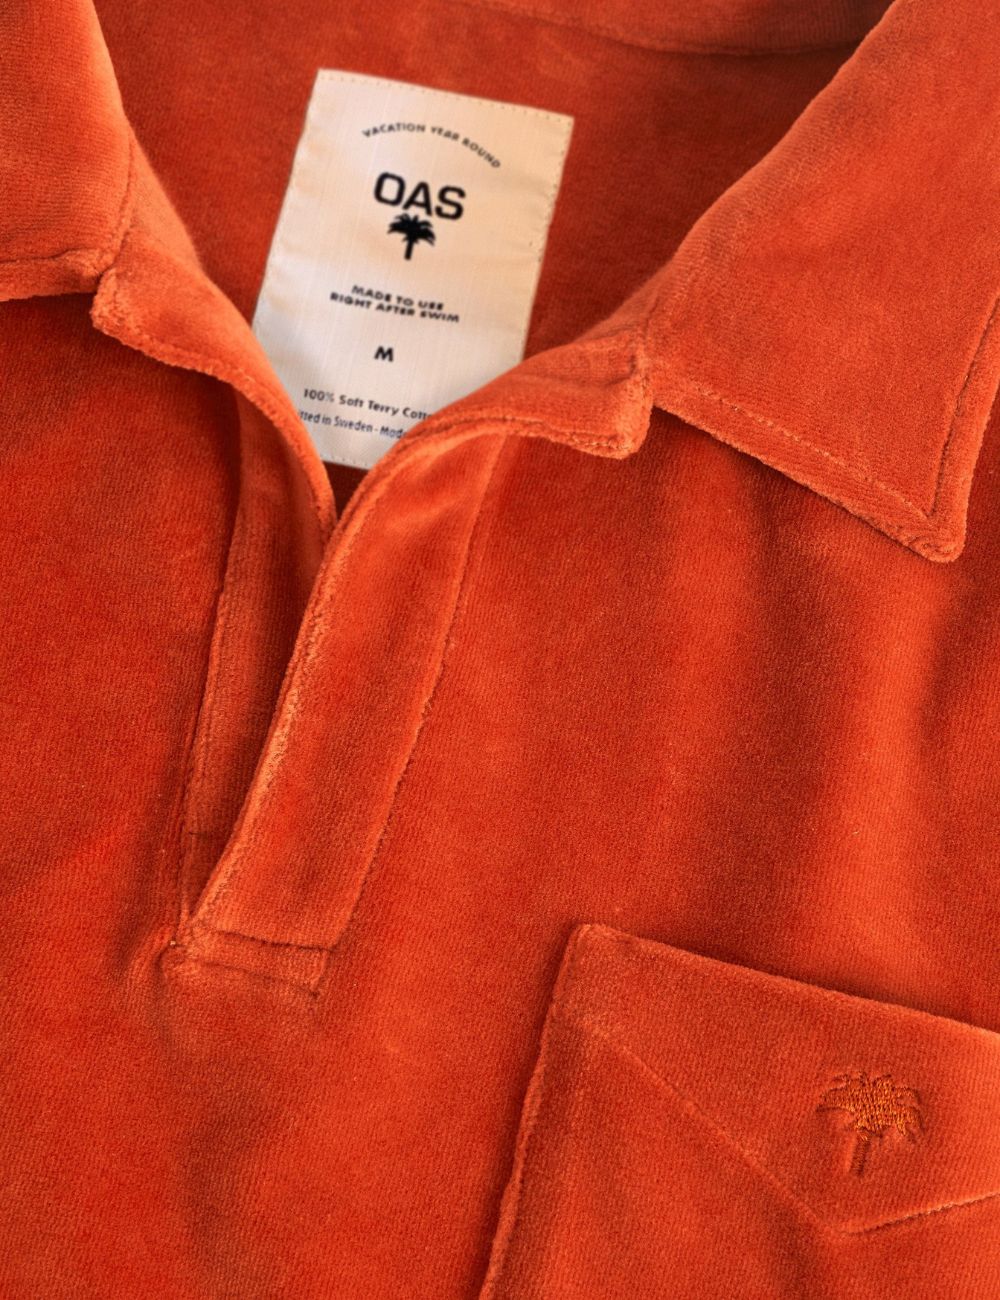 OAS Burnt Orange Velour Long Sleeve